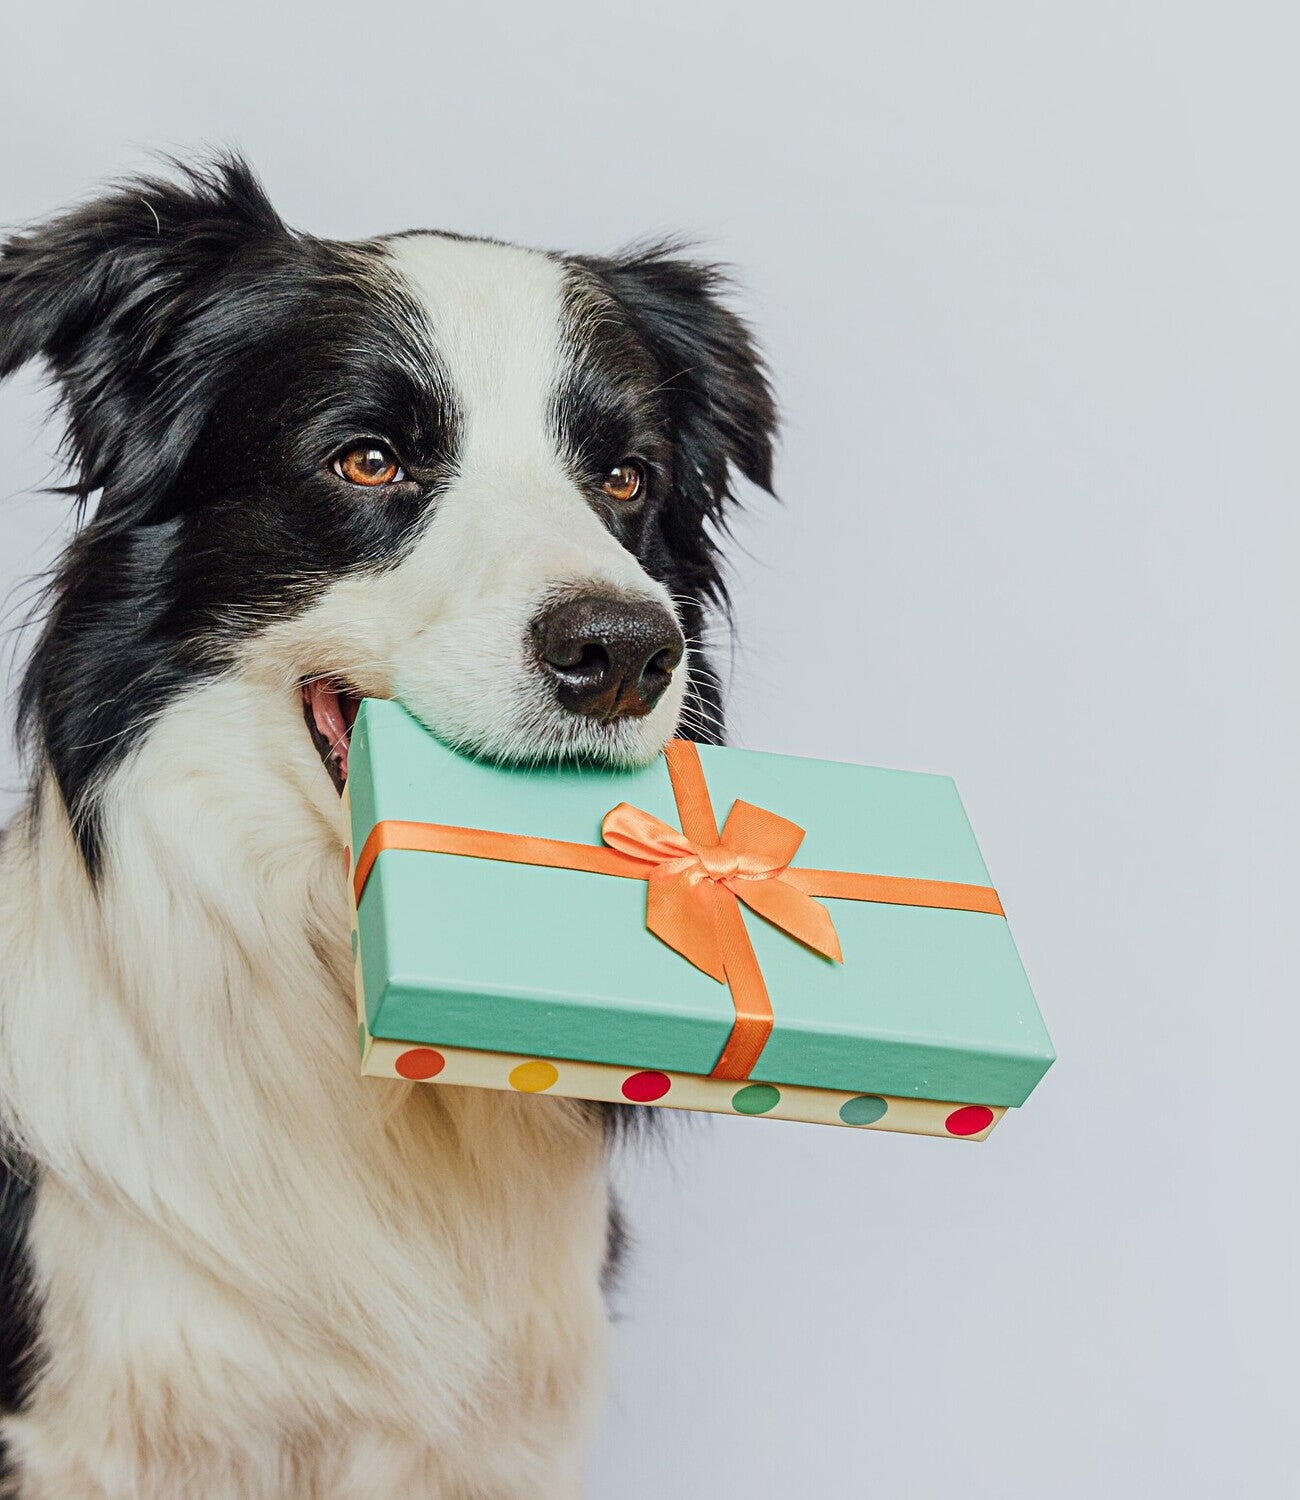 Kategorie "Gutscheine" im AMMI for Dogs Onlineshop. Bildbeschreibung: Ein Hund hält eine Geschenkbox in seinem Maul.